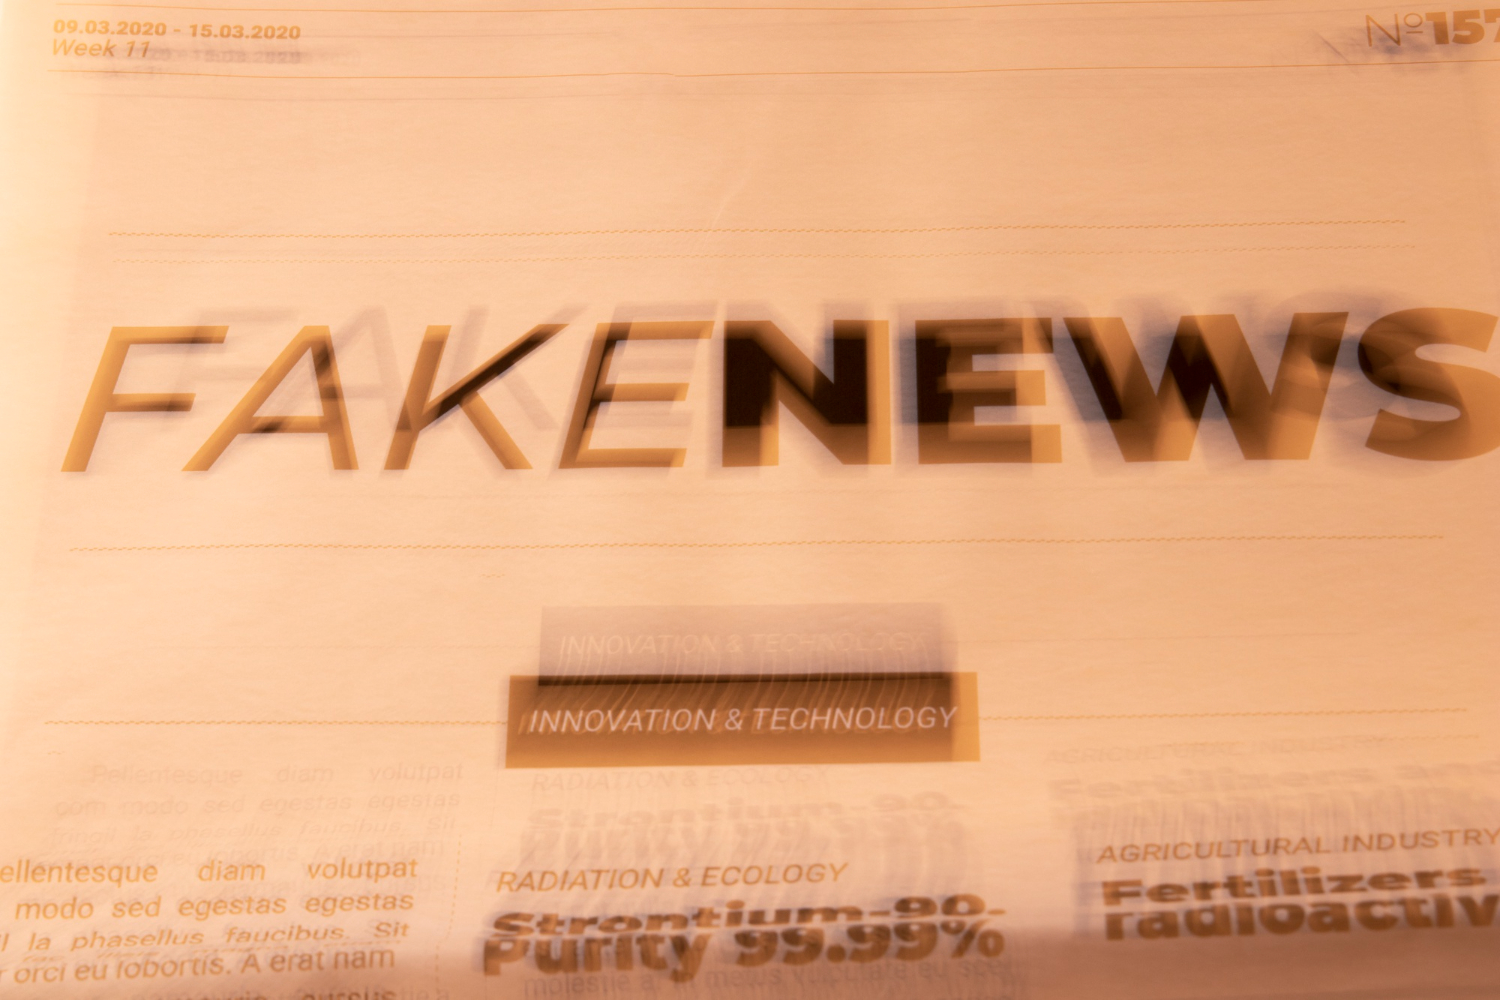 Especialista comenta consequências da disseminação de fake news na sociedade